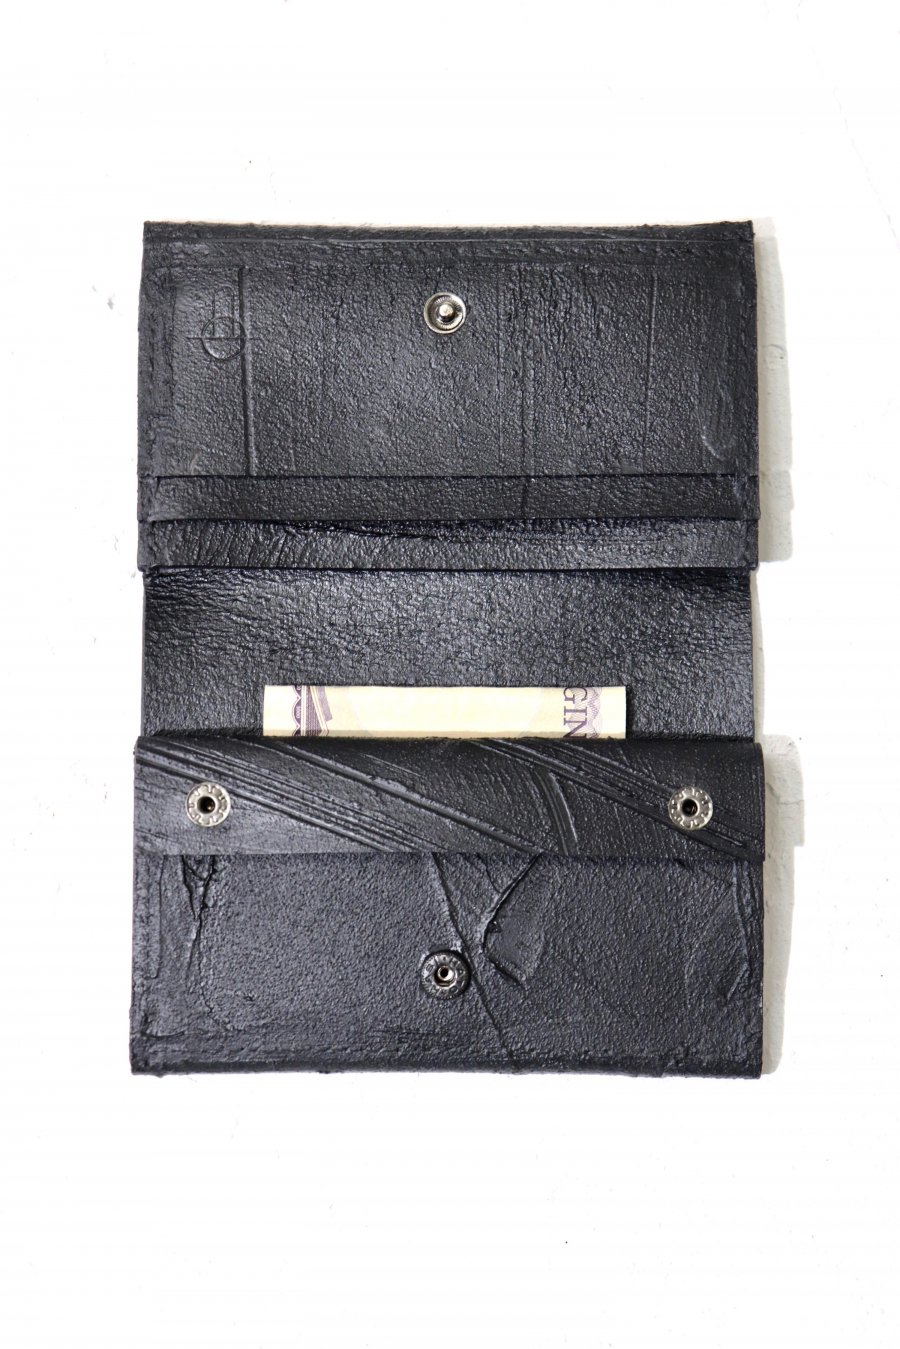 カガリユウスケ（KAGARI YUSUKE）の黒壁 二つ折り財布（mw-13 